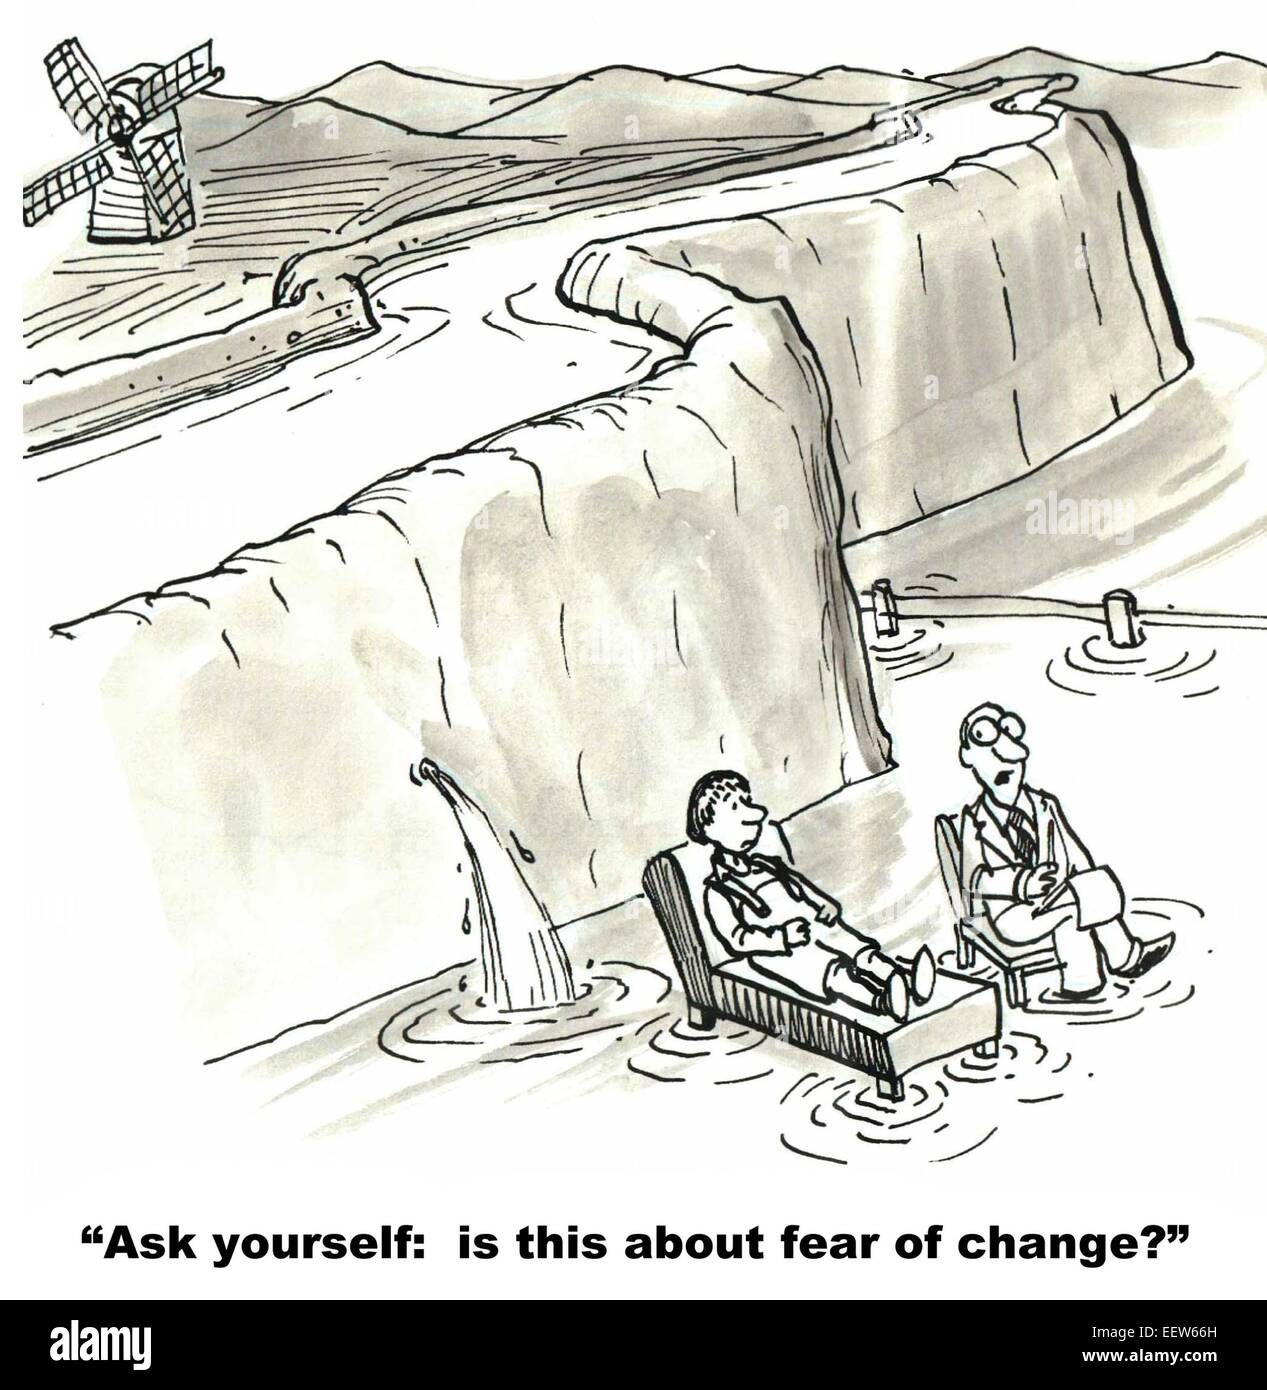 Karikatur von Dutch Boy mit Therapeutin und Therapeut bittet, es geht um Angst vor Veränderung. Stockfoto